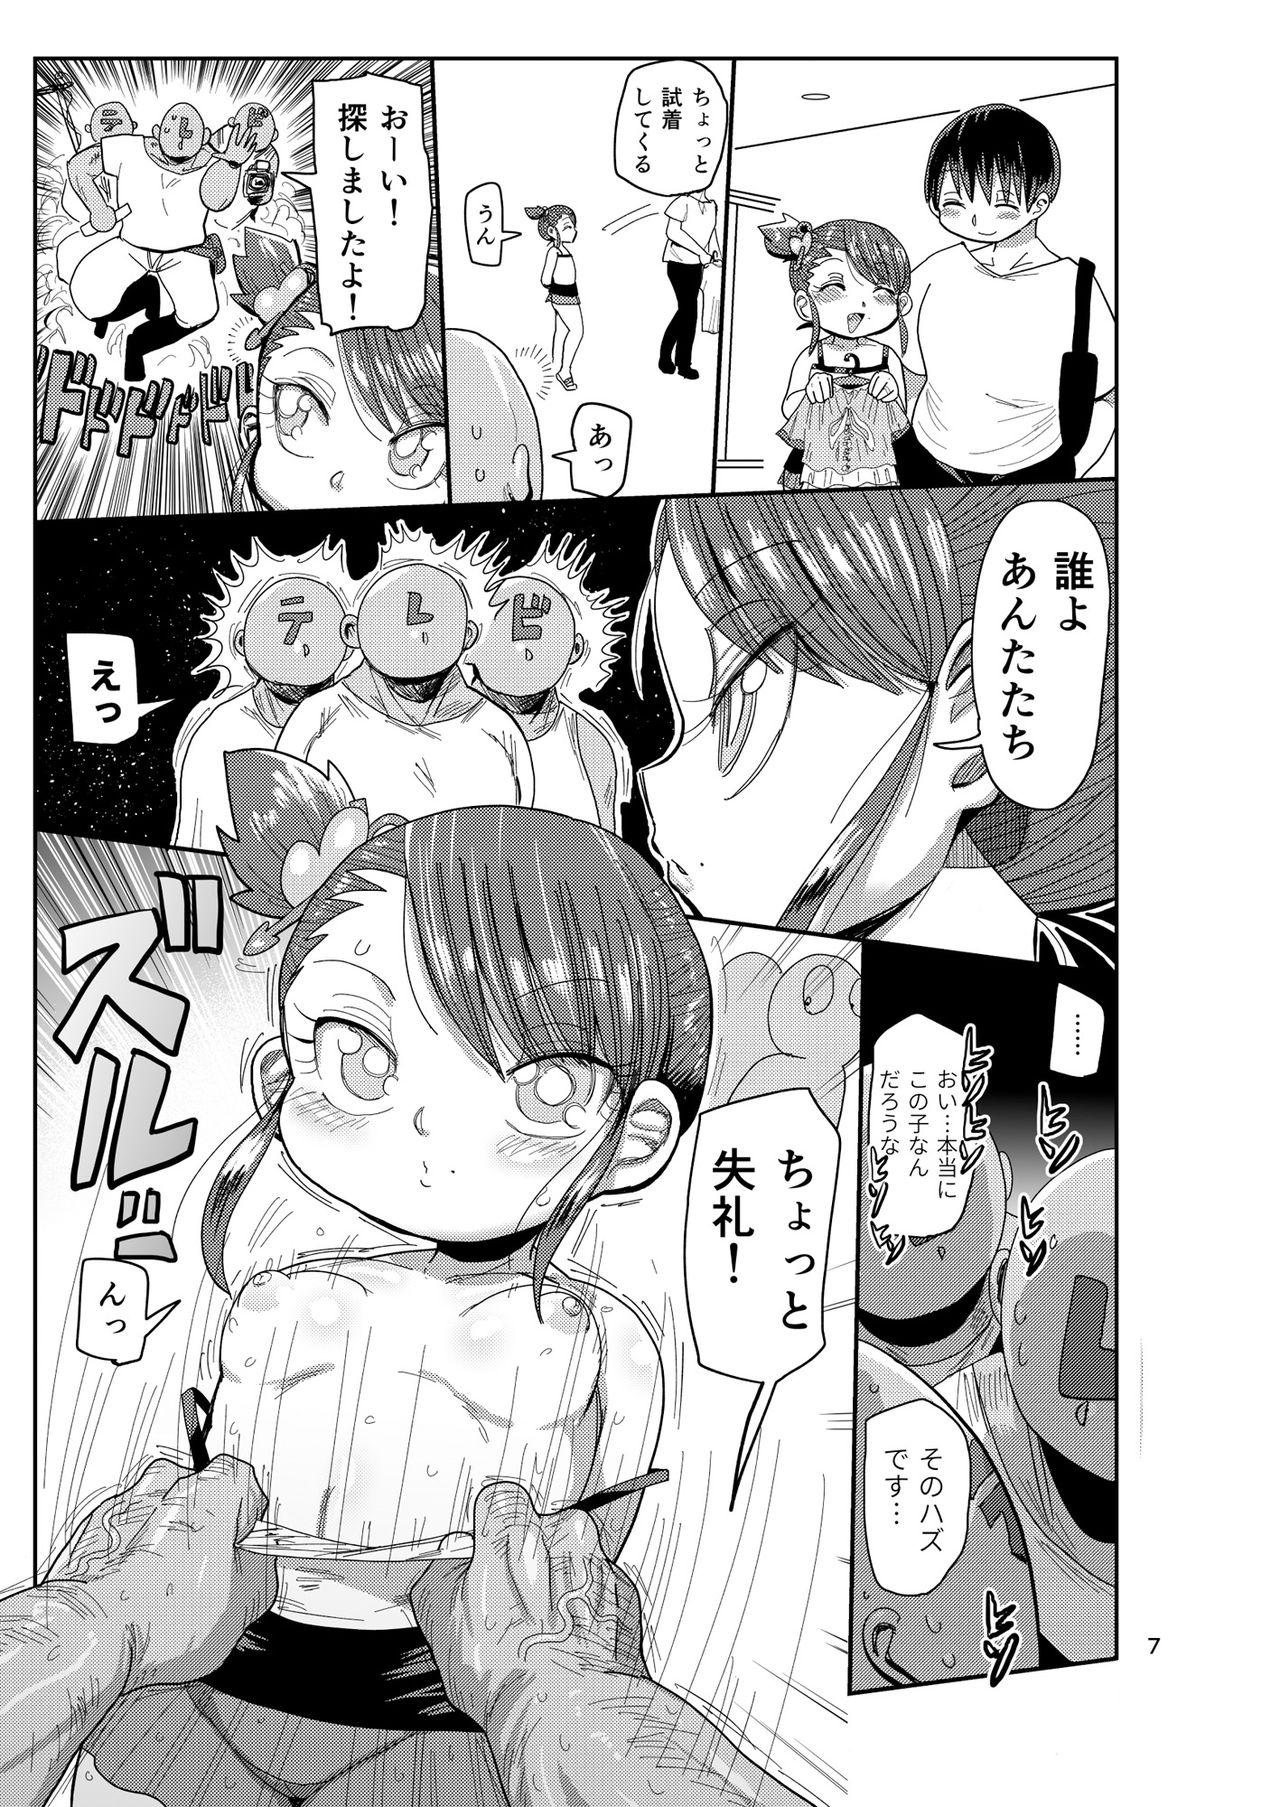 Rubdown Watashi no Mawari ni wa Kiken ga Ippai! - Original Asses - Page 6